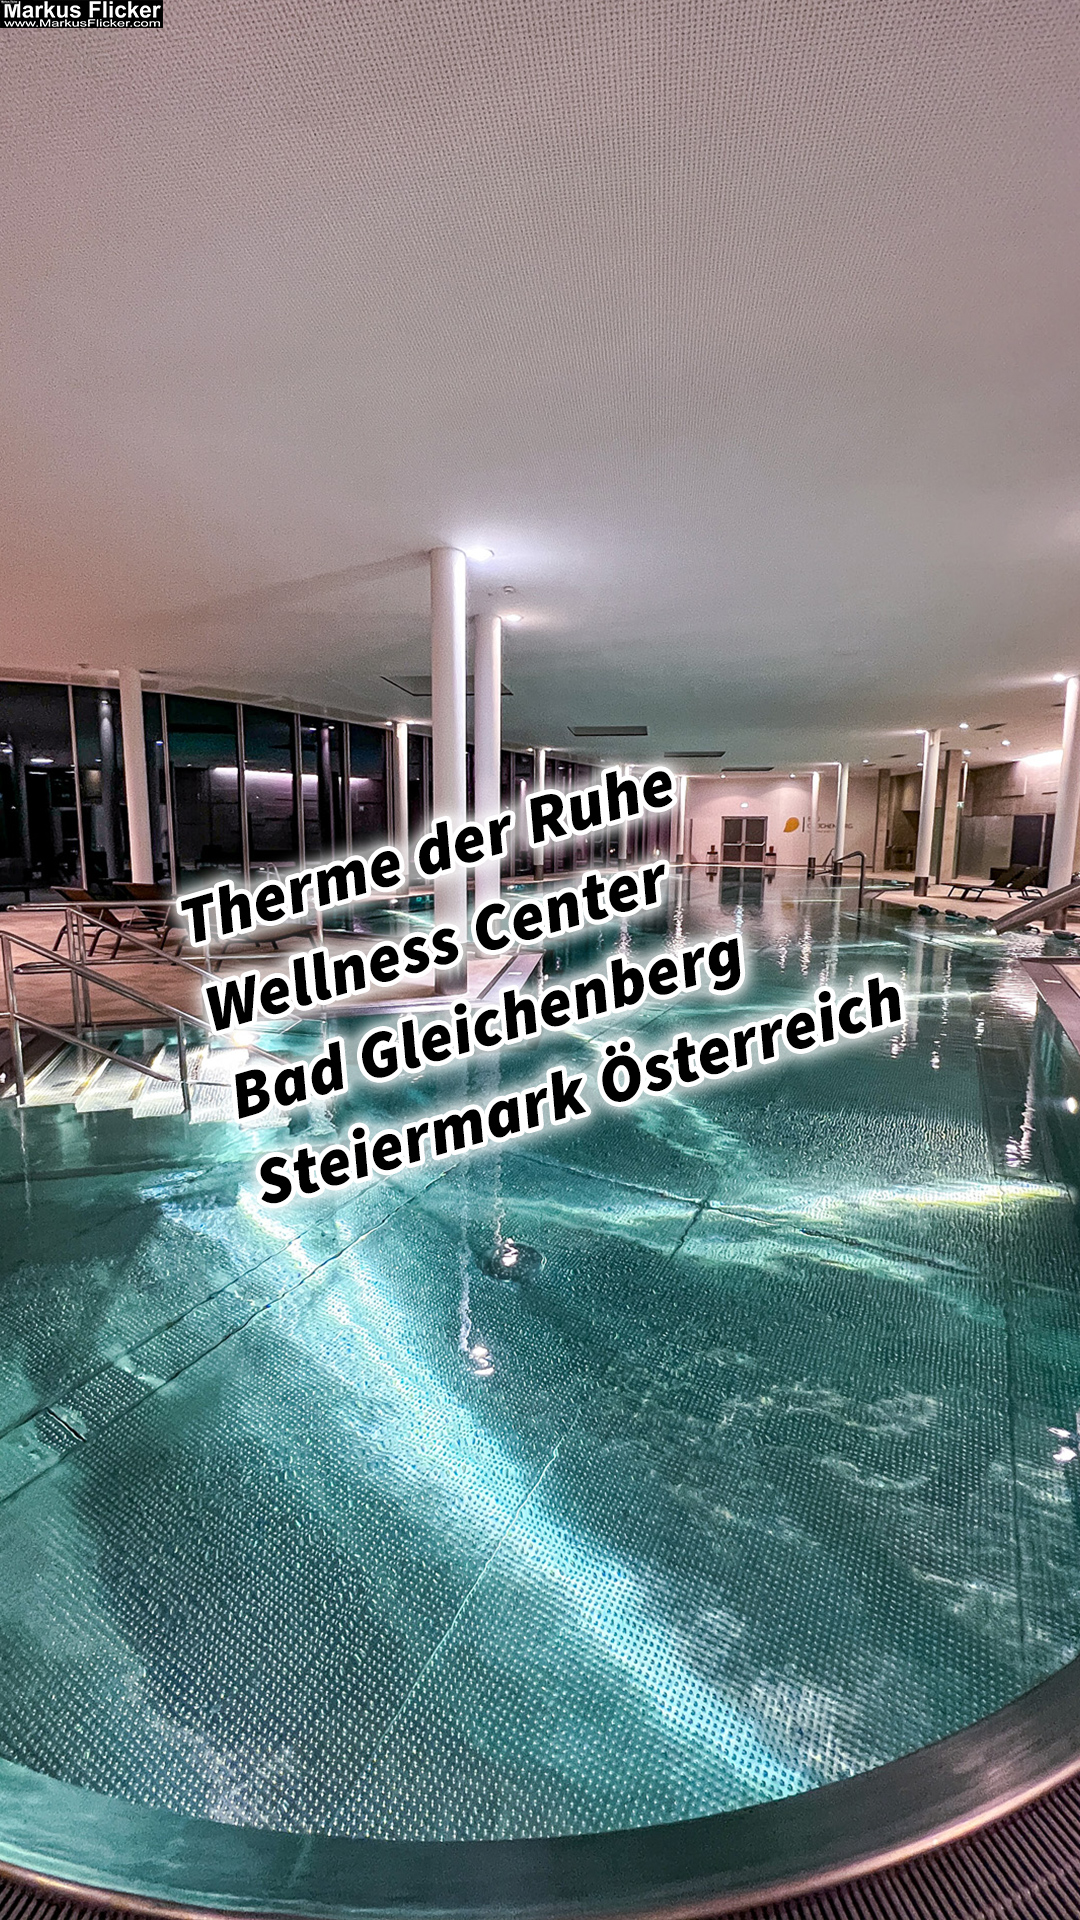 Therme der Ruhe Wellness Center Kurhaus Bad Gleichenberg Steiermark Österreich #daskurhausbadgleichenberg #gesundheitszentrum #visitstyria #visitaustria